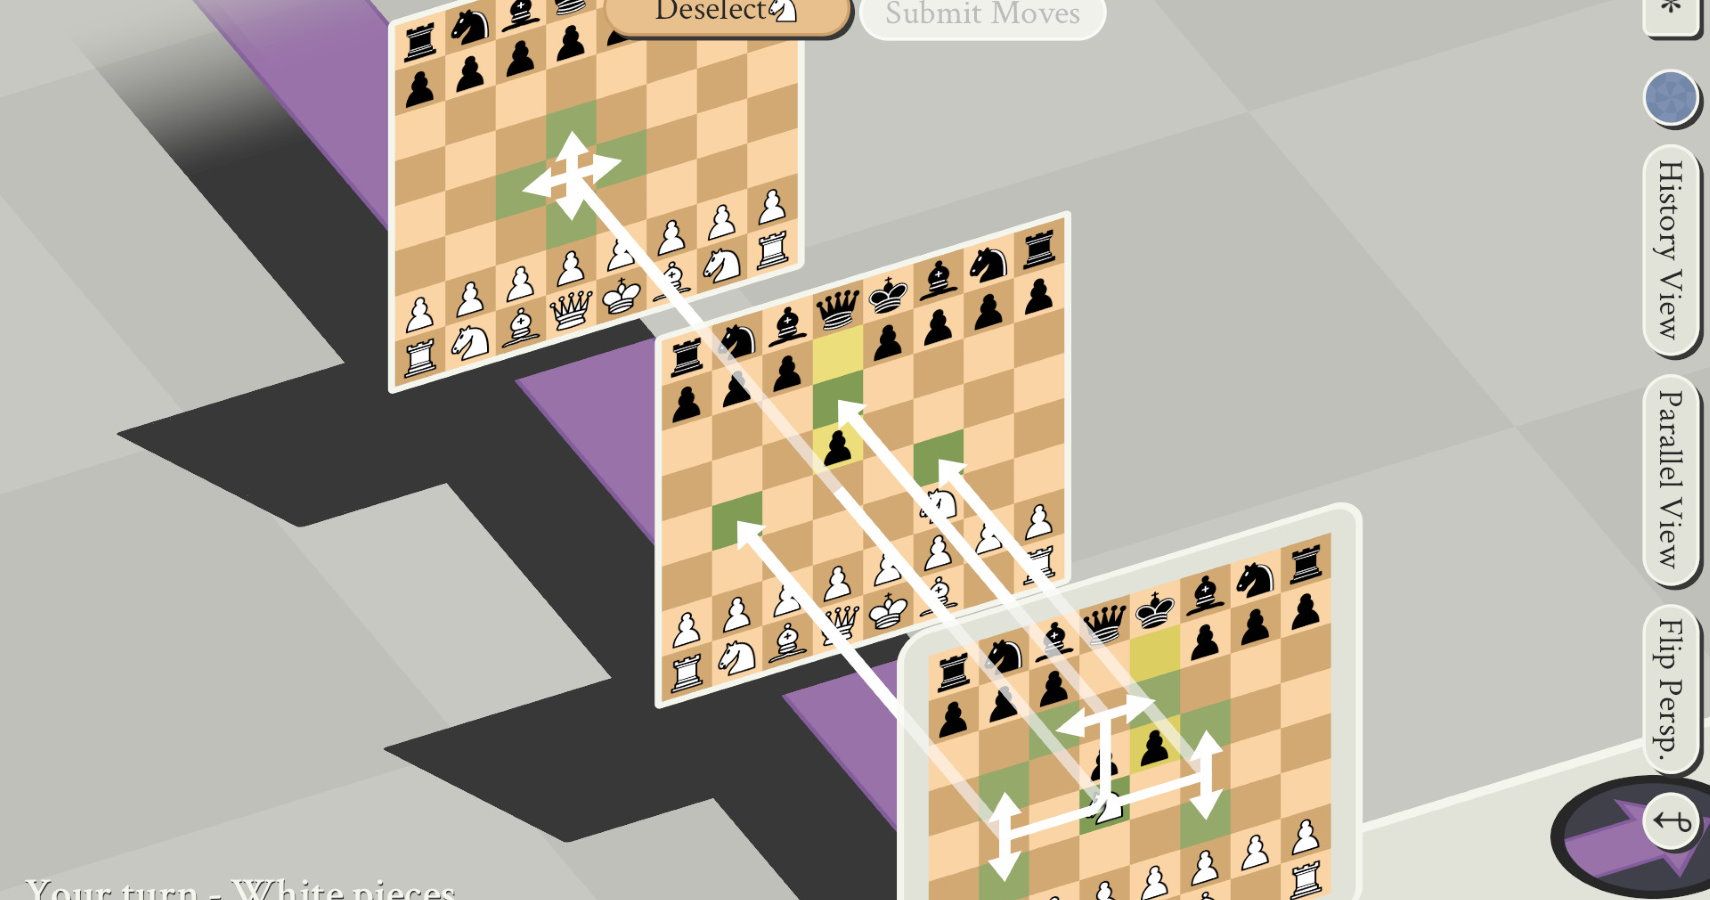 5D Chess